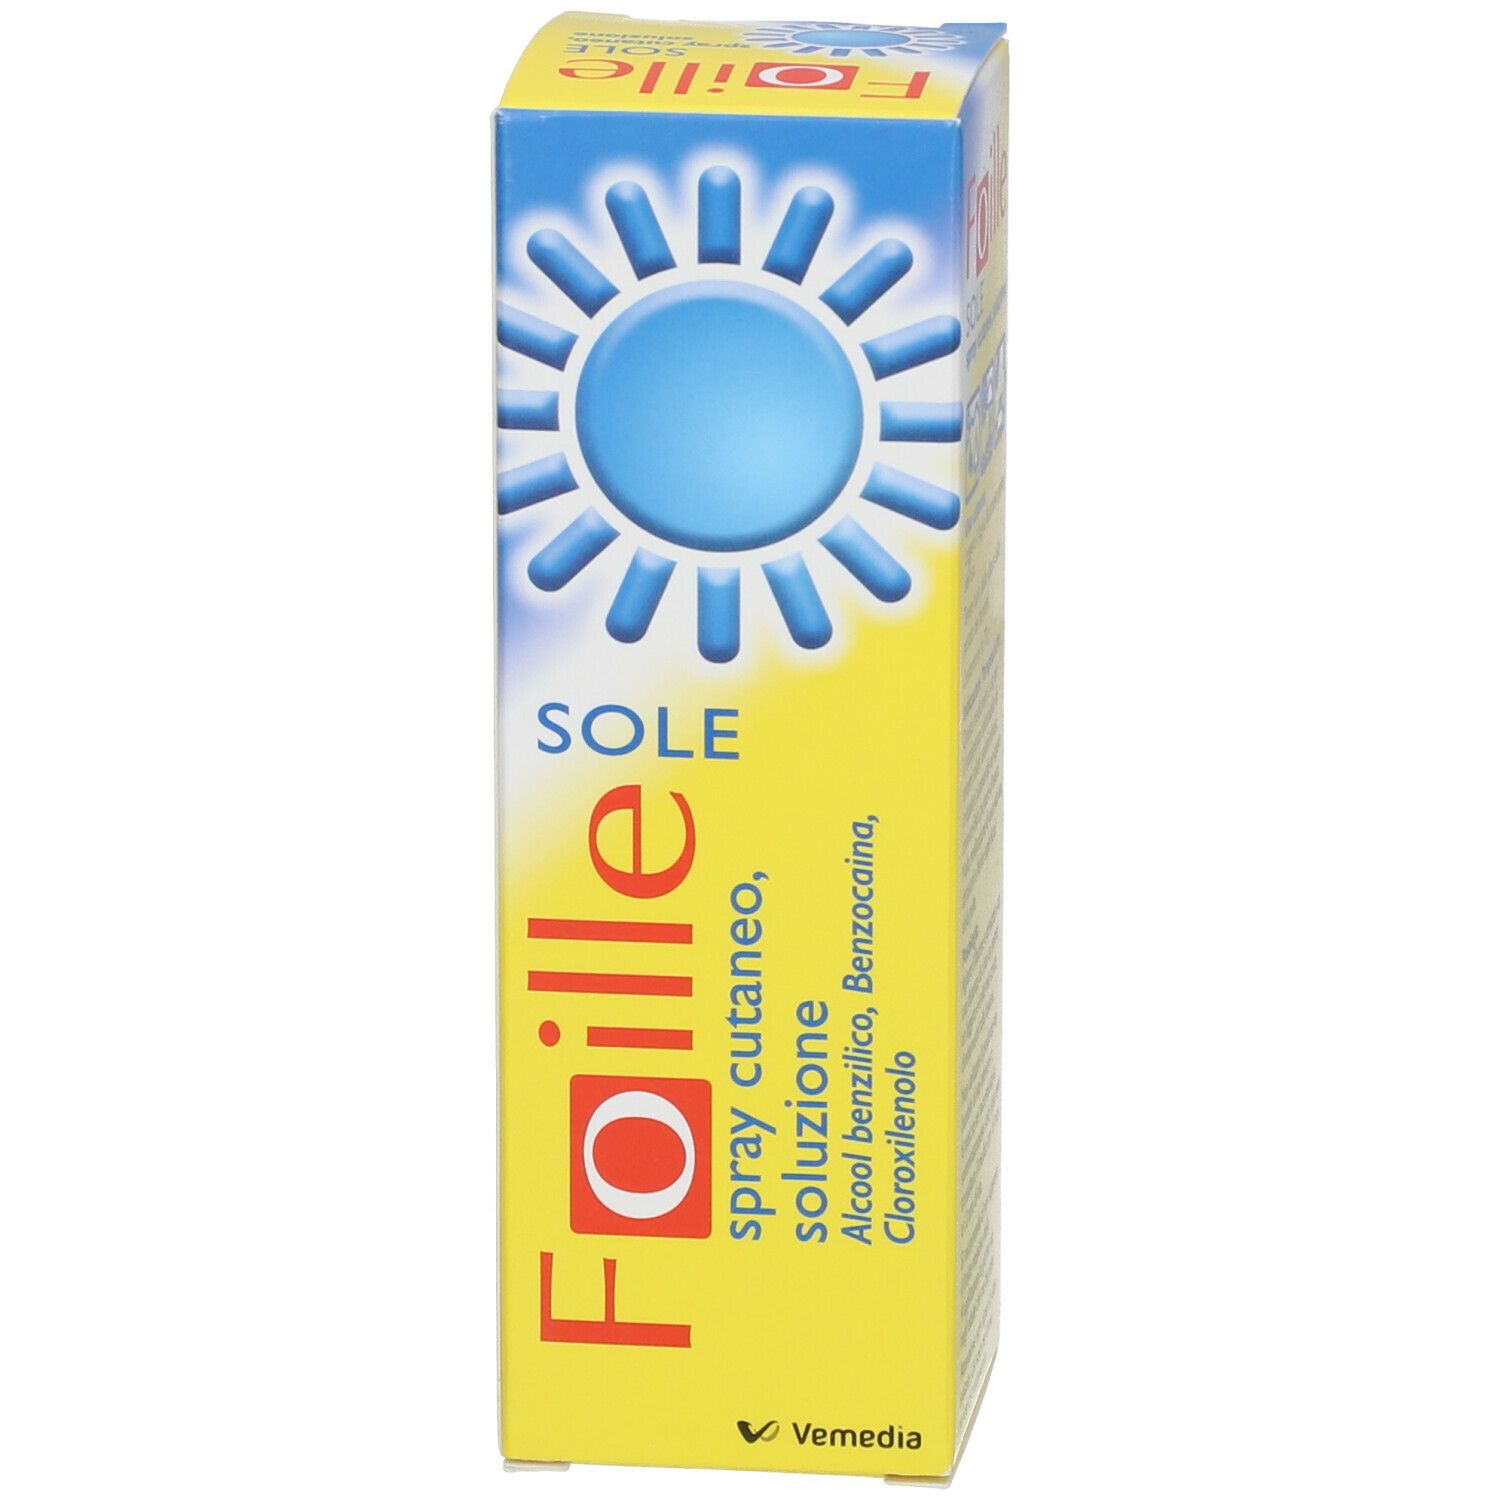 Foille SOLE Spray Cutaneo Soluzione